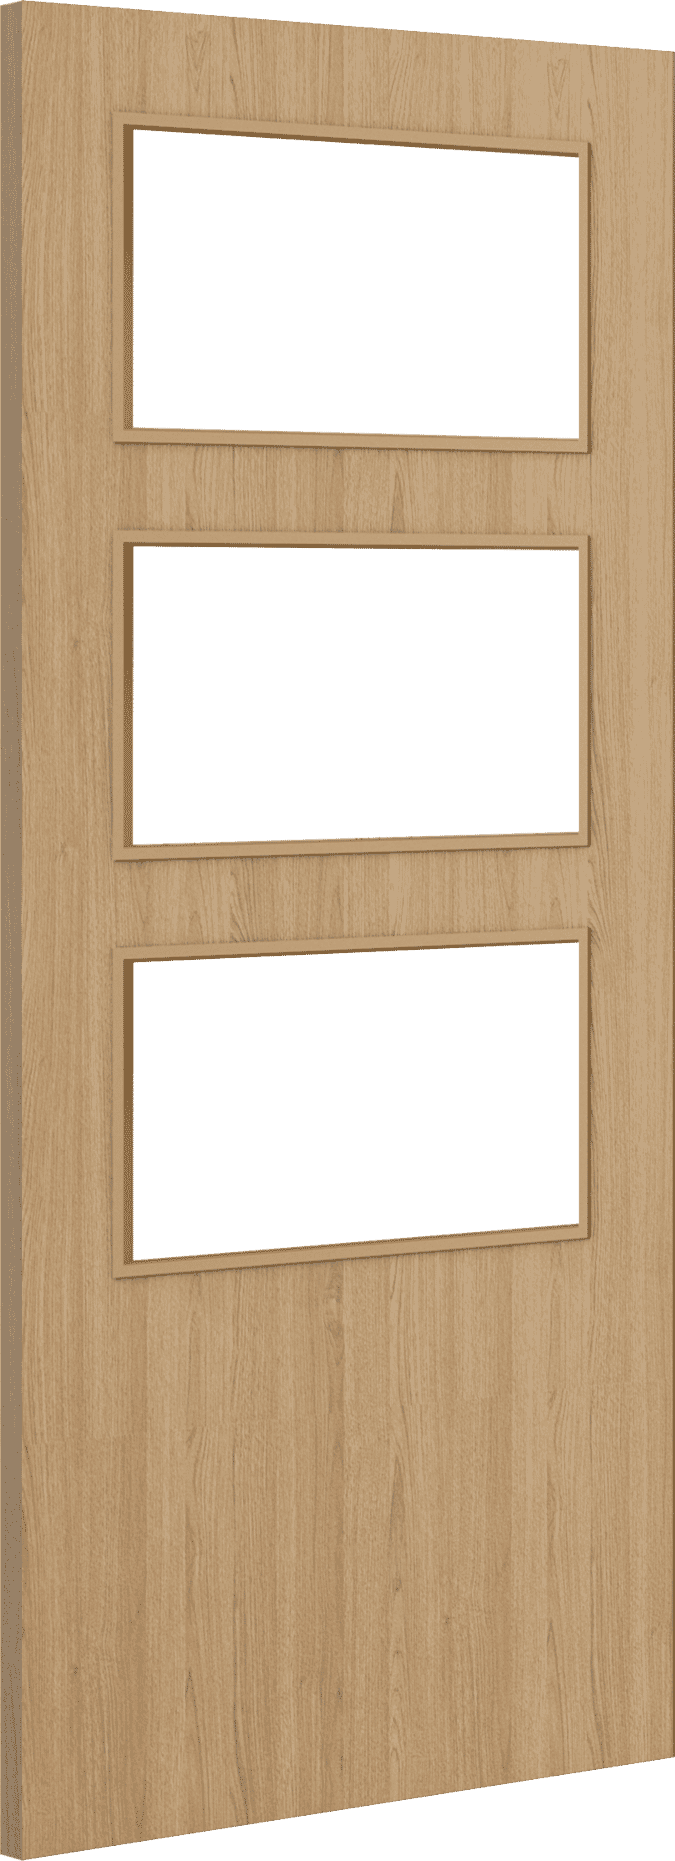 1981mm x 610mm x 44mm (24") Architectural Oak 03 Clear Glazed - Prefinished FD30 Fire Door Blank